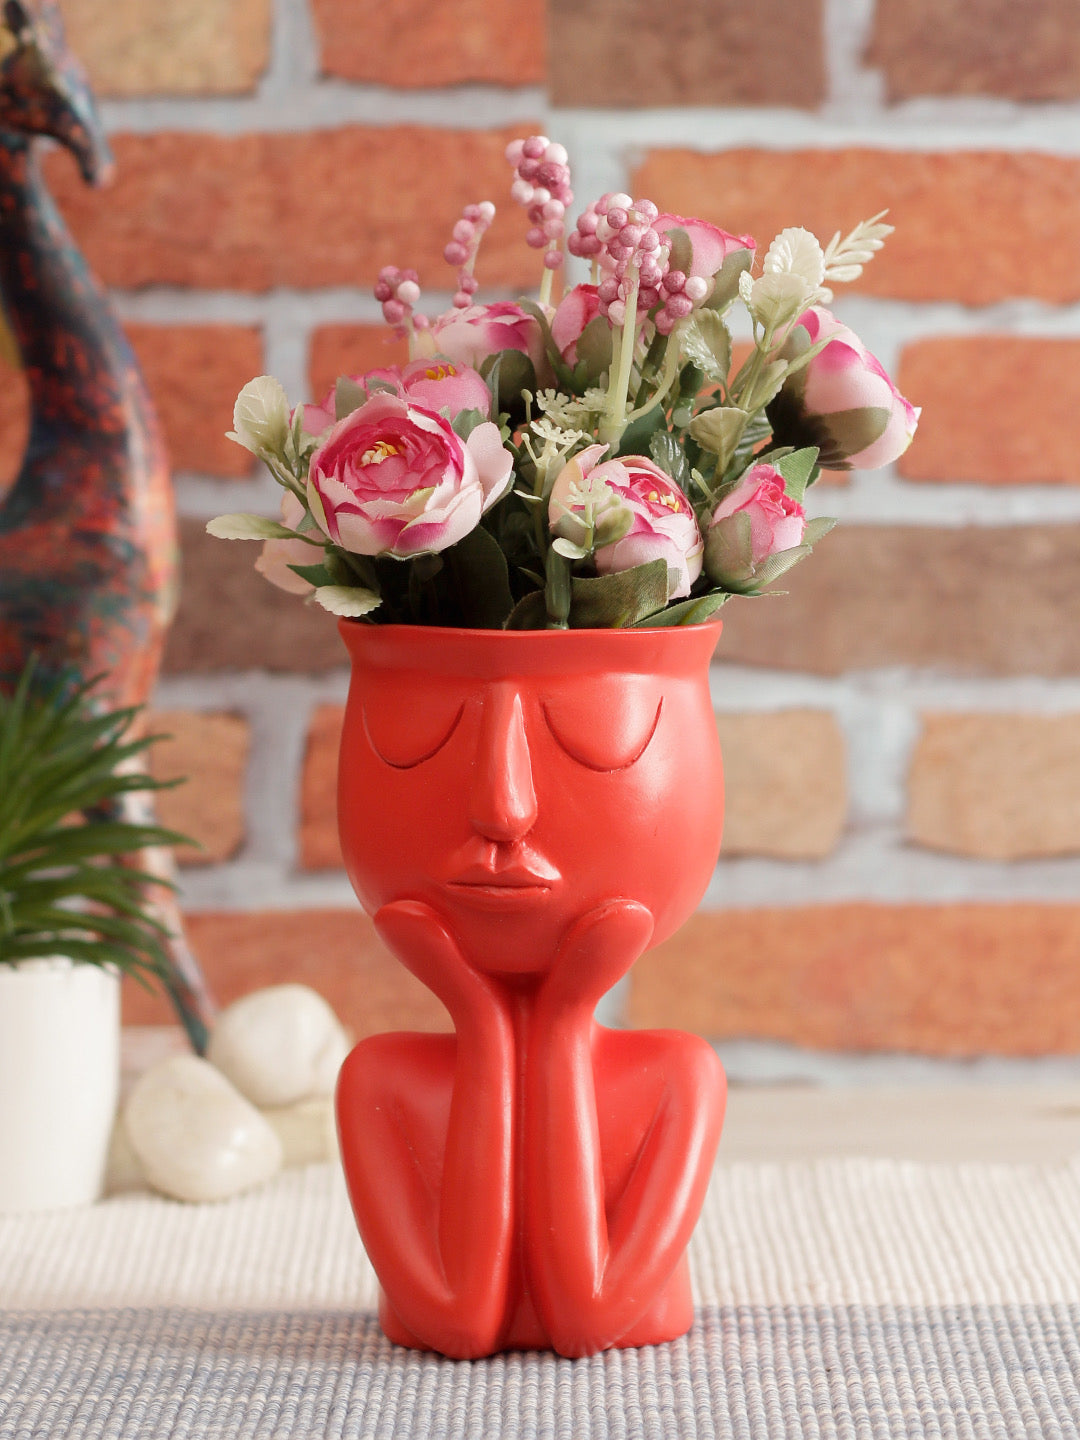 Red Coloured Human Figurine Flower Vase - Default Title (VAS2020190)